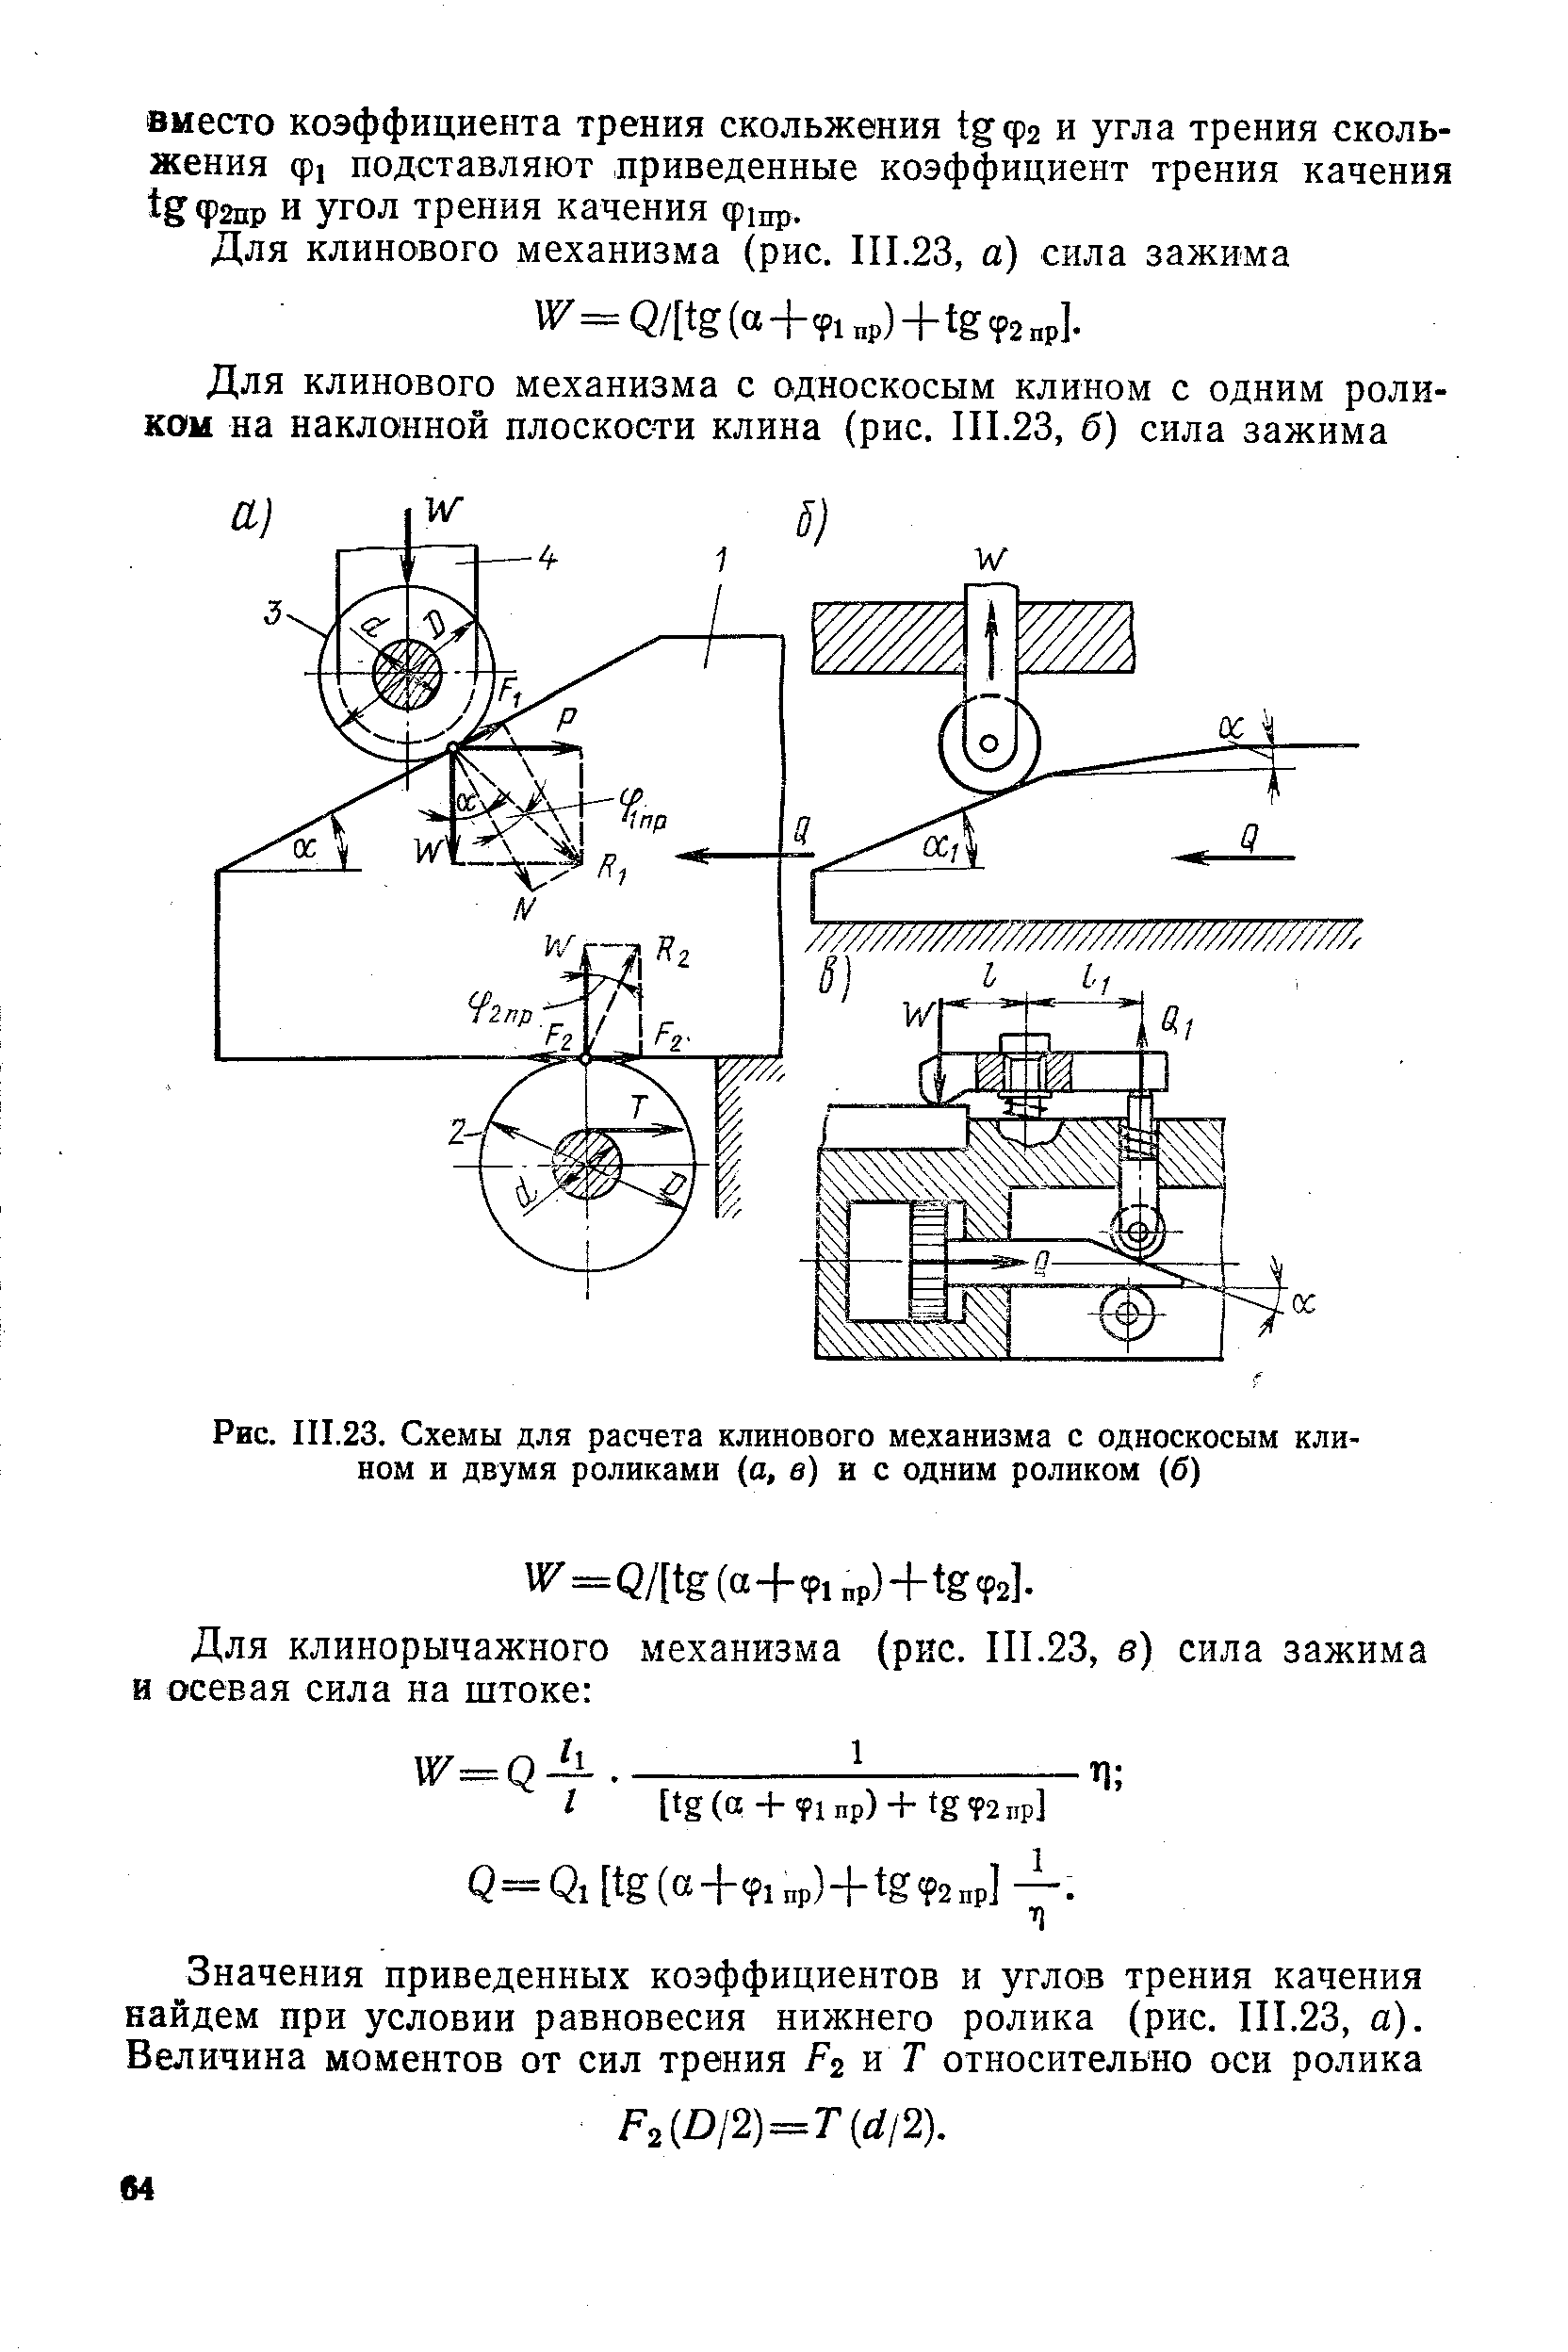 Рис. III.23. Схемы для расчета клинового механизма с односкосым клином и двумя роликами (а, в) и с одним роликом (б)
